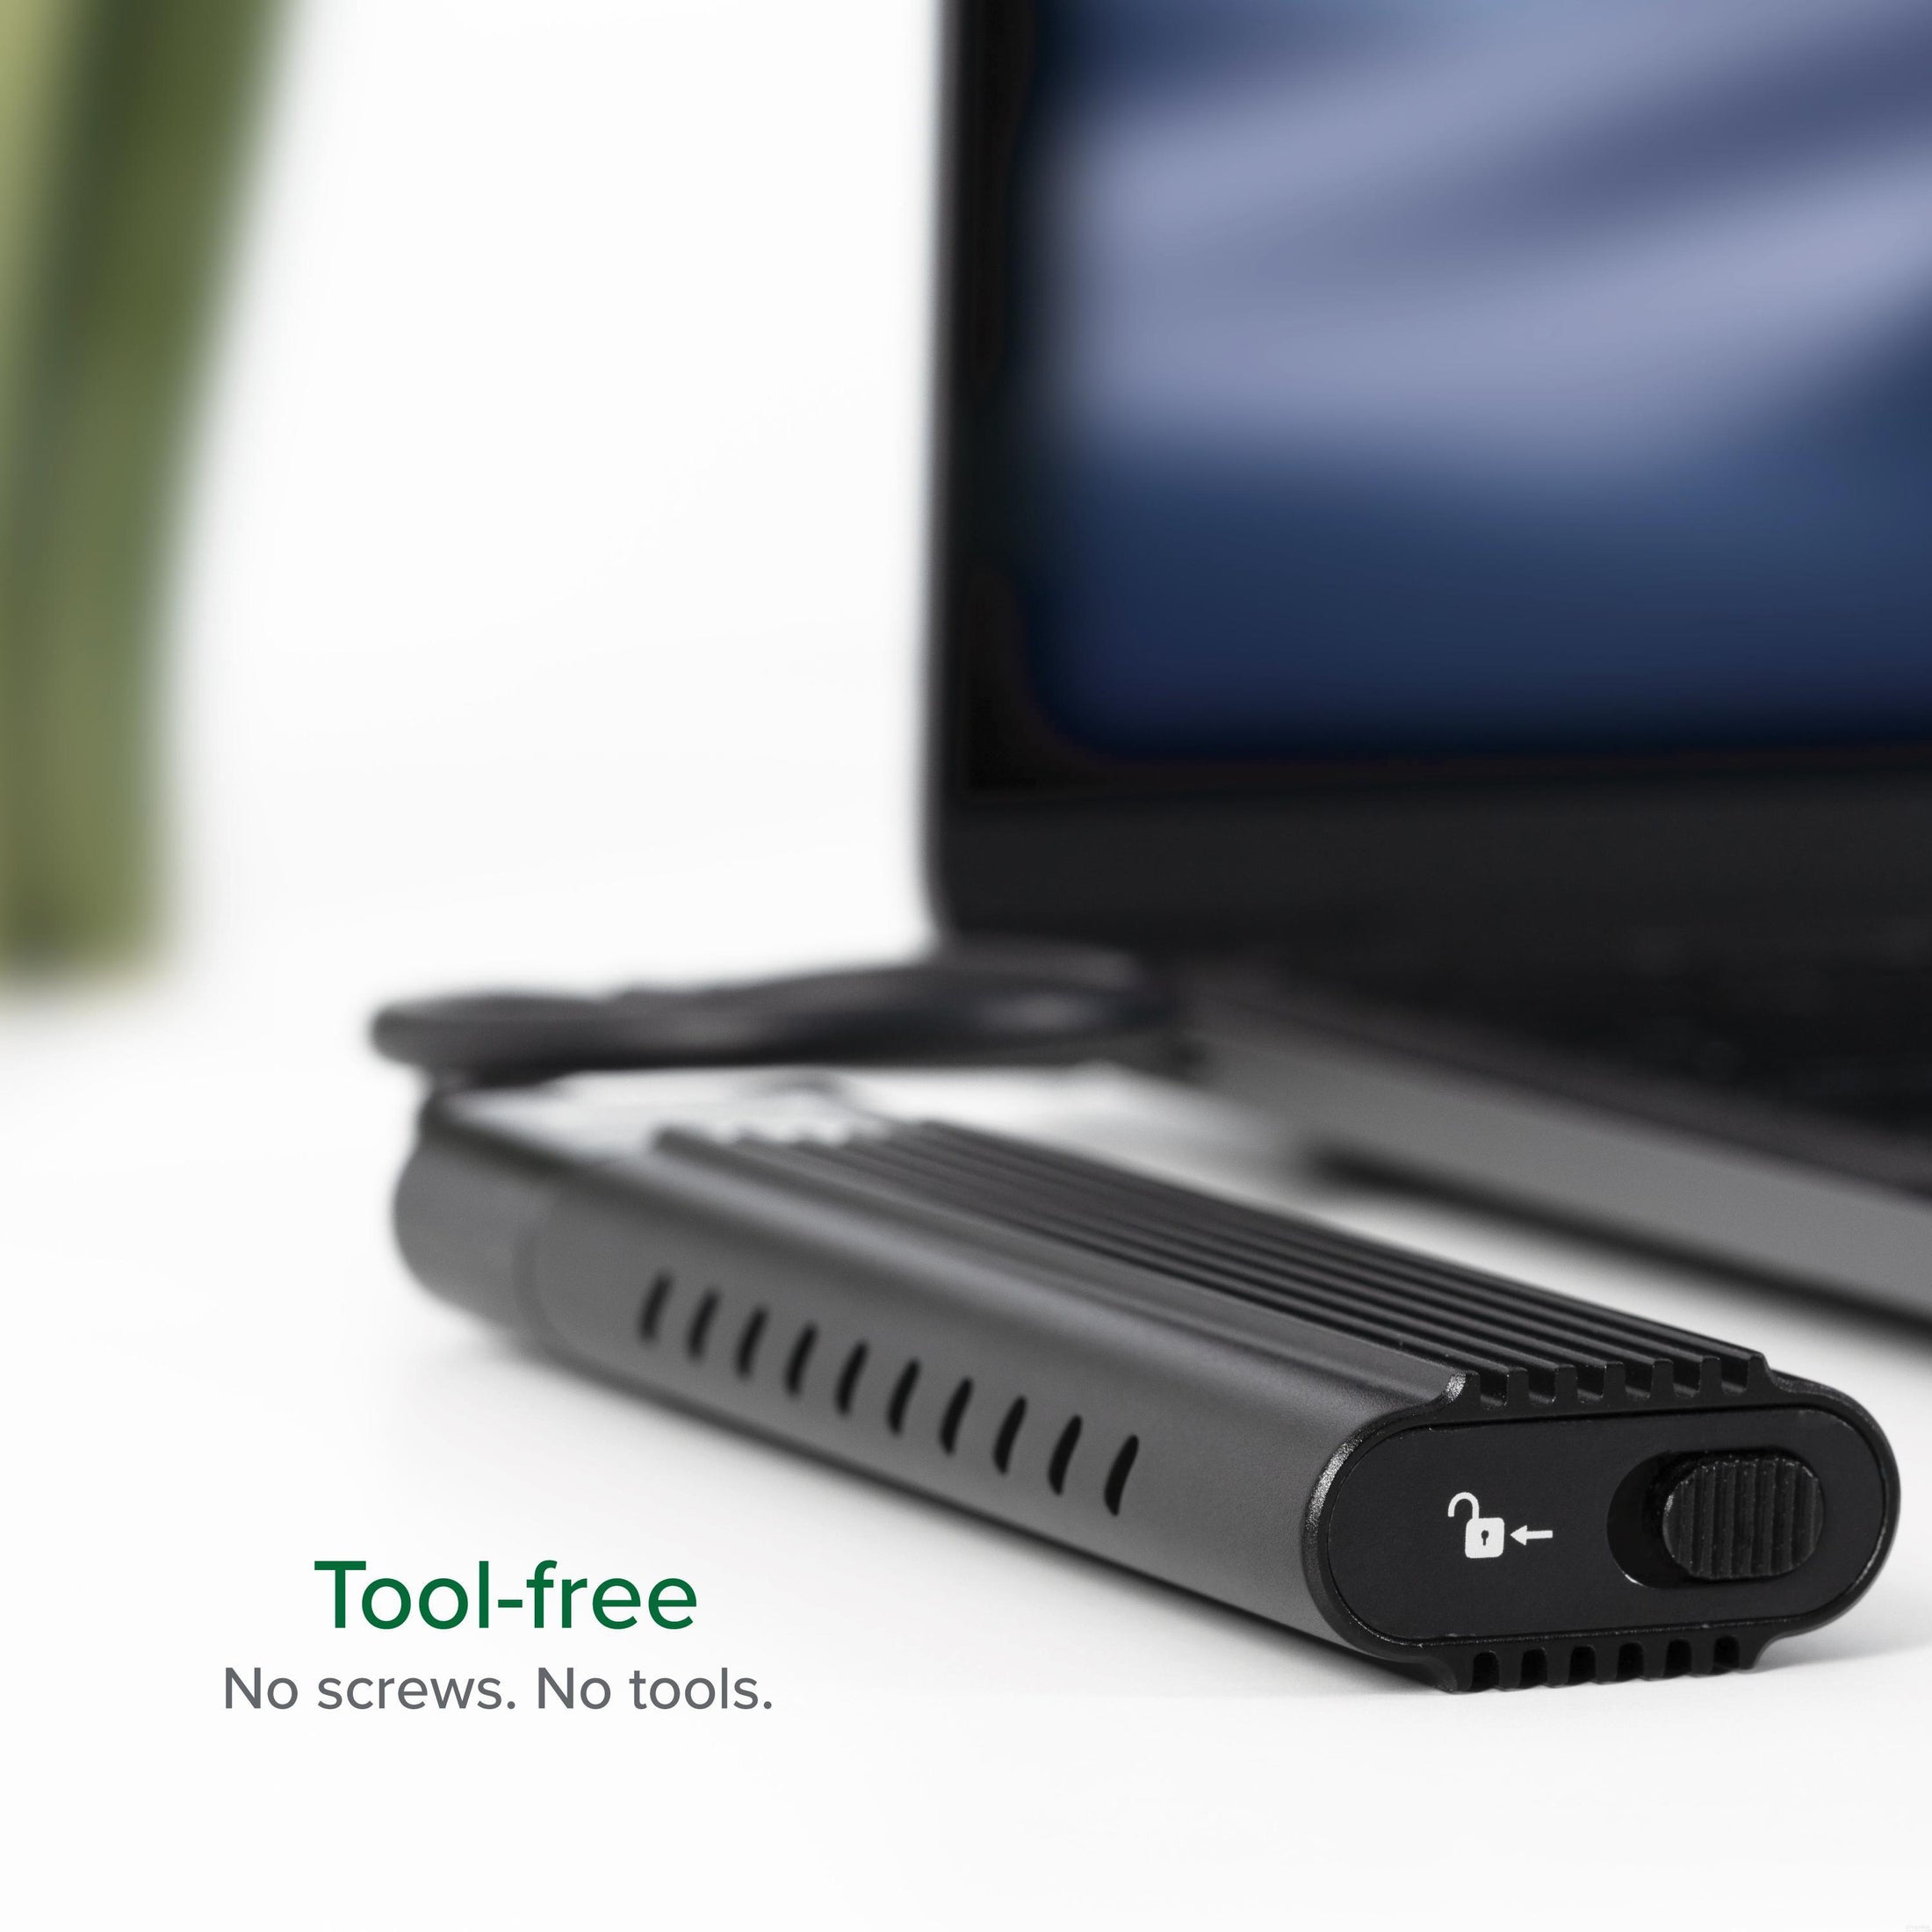 Plugable USB 3.1 Gen 2 Tool-free NVMe Enclosure – Plugable Technologies